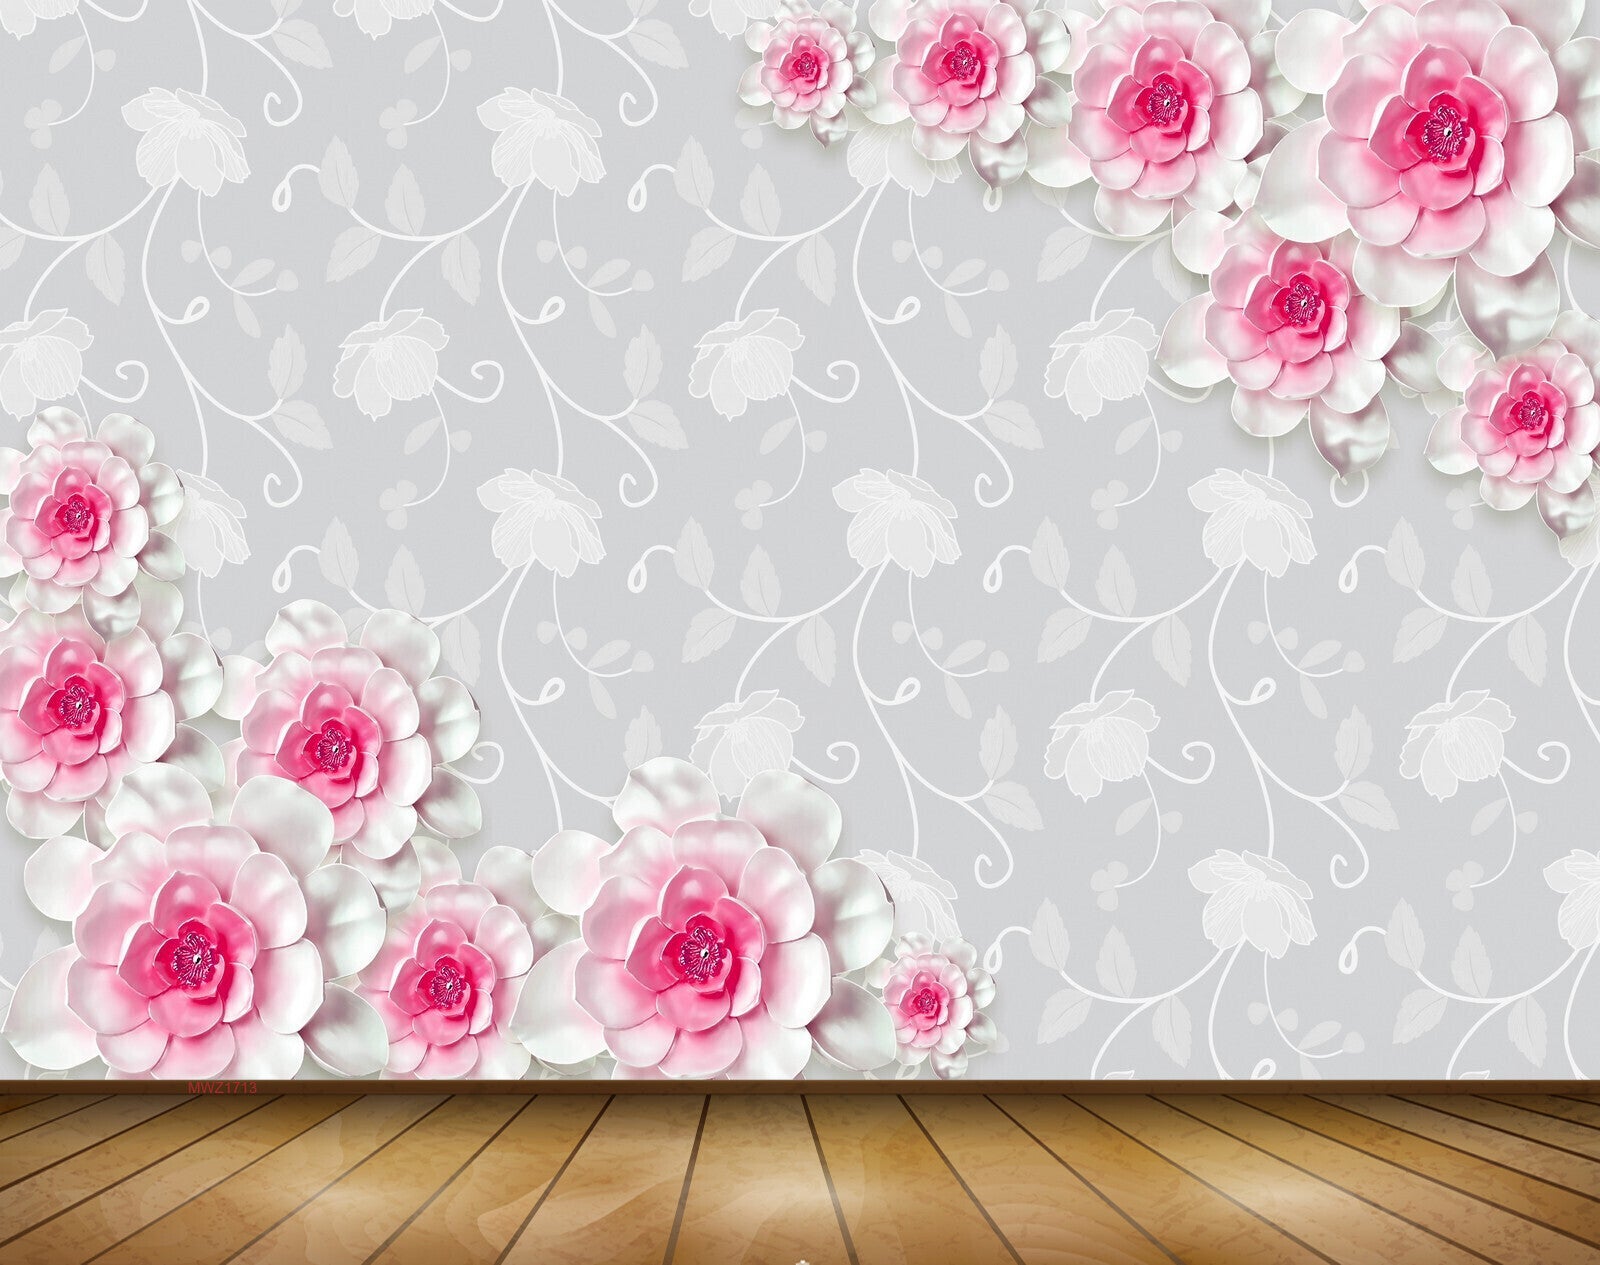 Avikalp MWZ1713 Pink White Flowers 3D HD Wallpaper